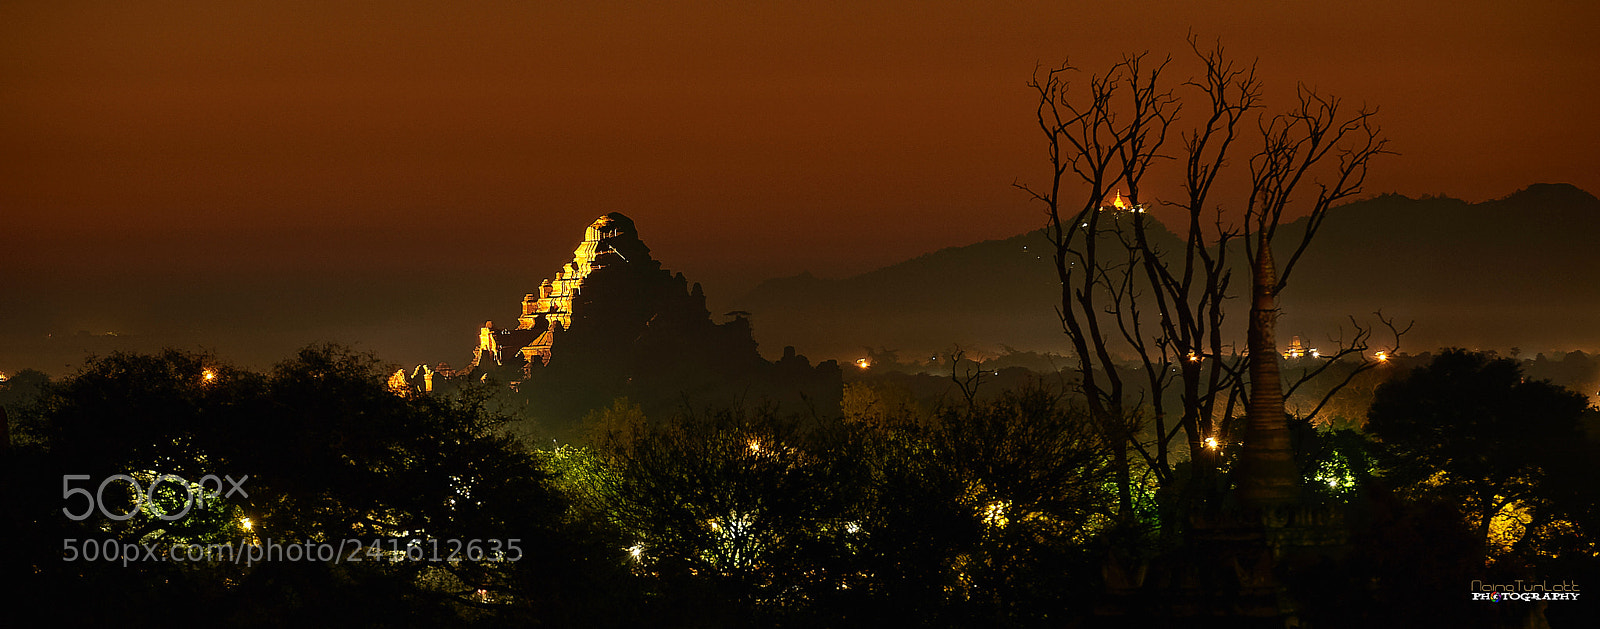 Nikon D700 sample photo. Dama yan gyi pagoda photography